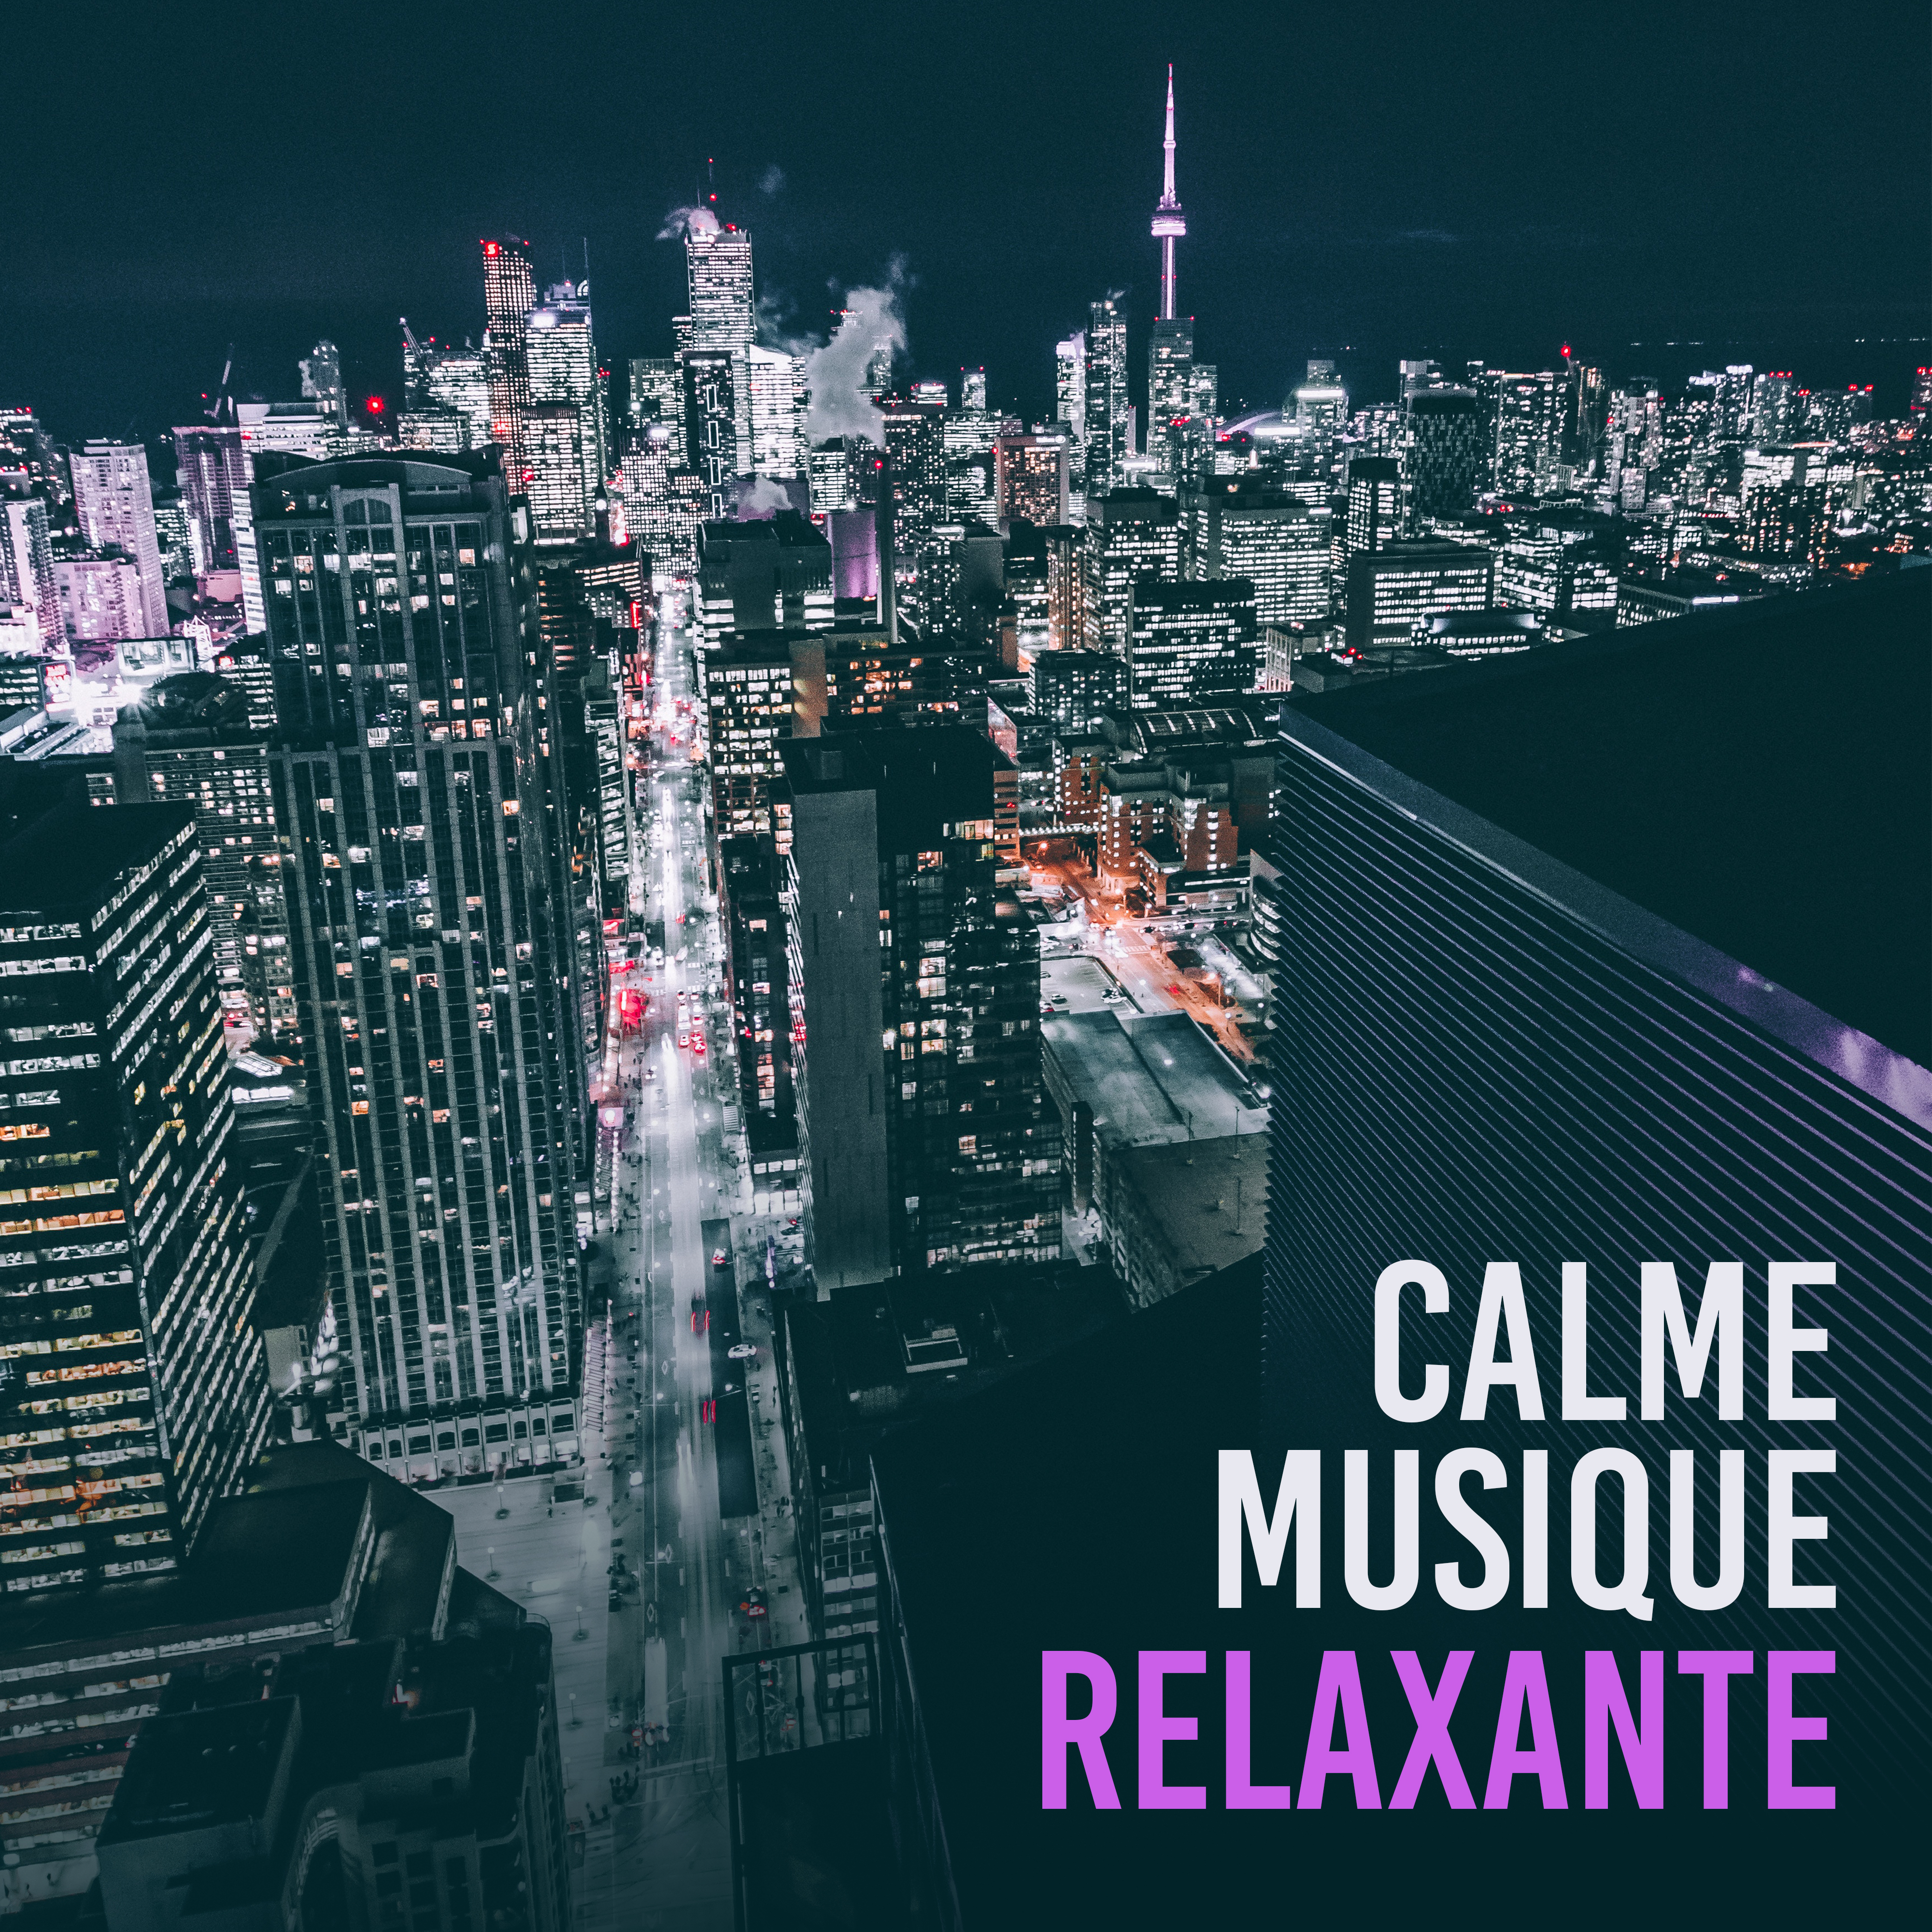 Calme musique relaxante